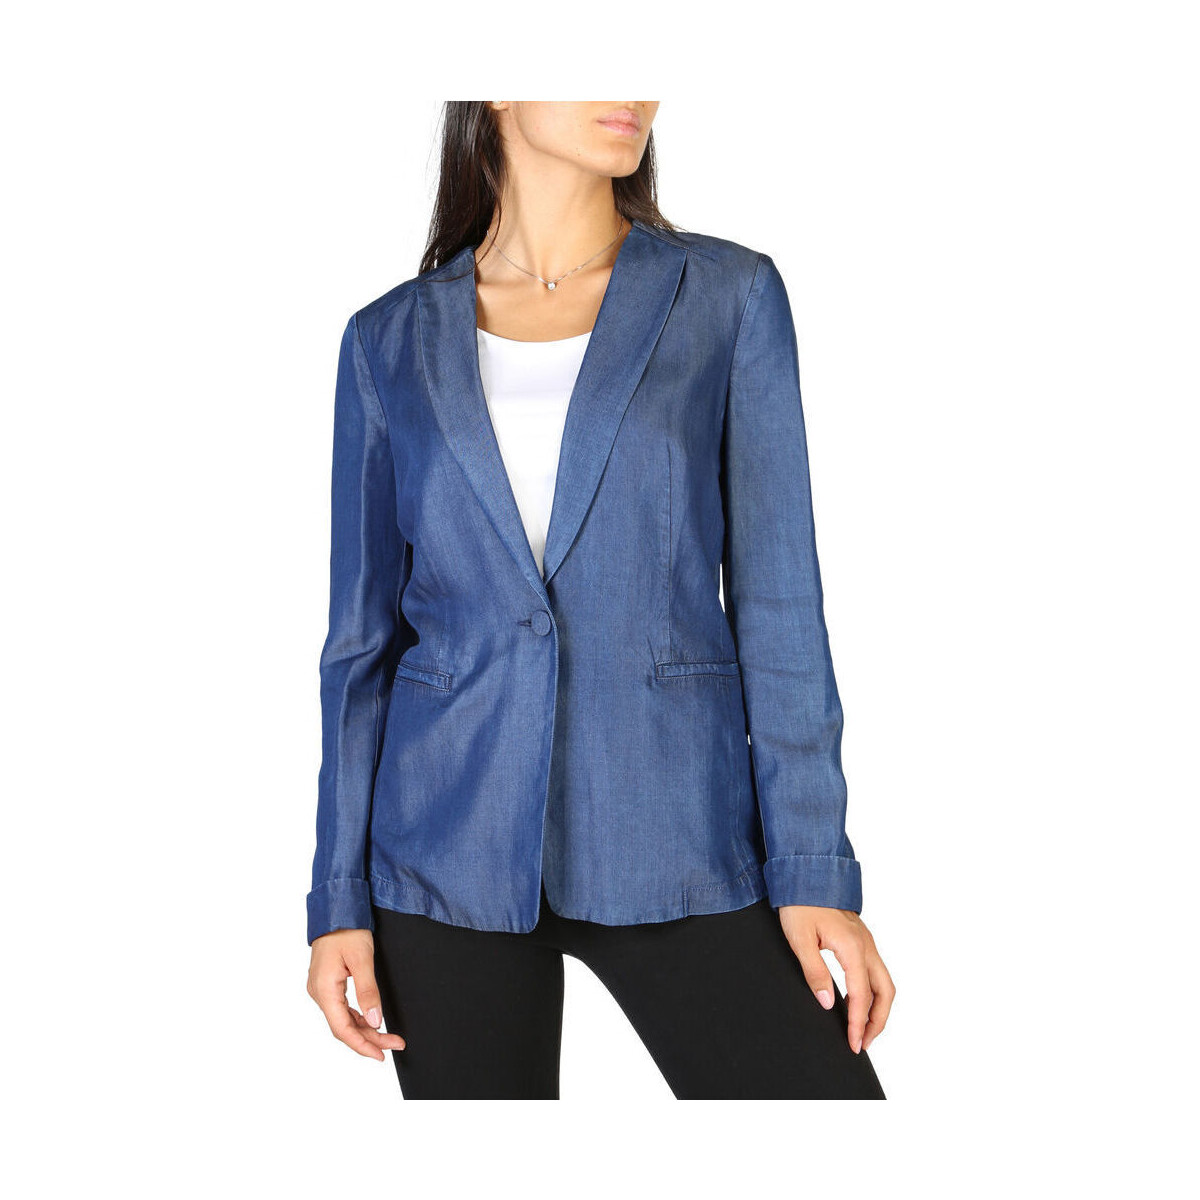 Abbigliamento Donna Giacche / Blazer Emporio Armani - 3y2g1r2d26z Blu